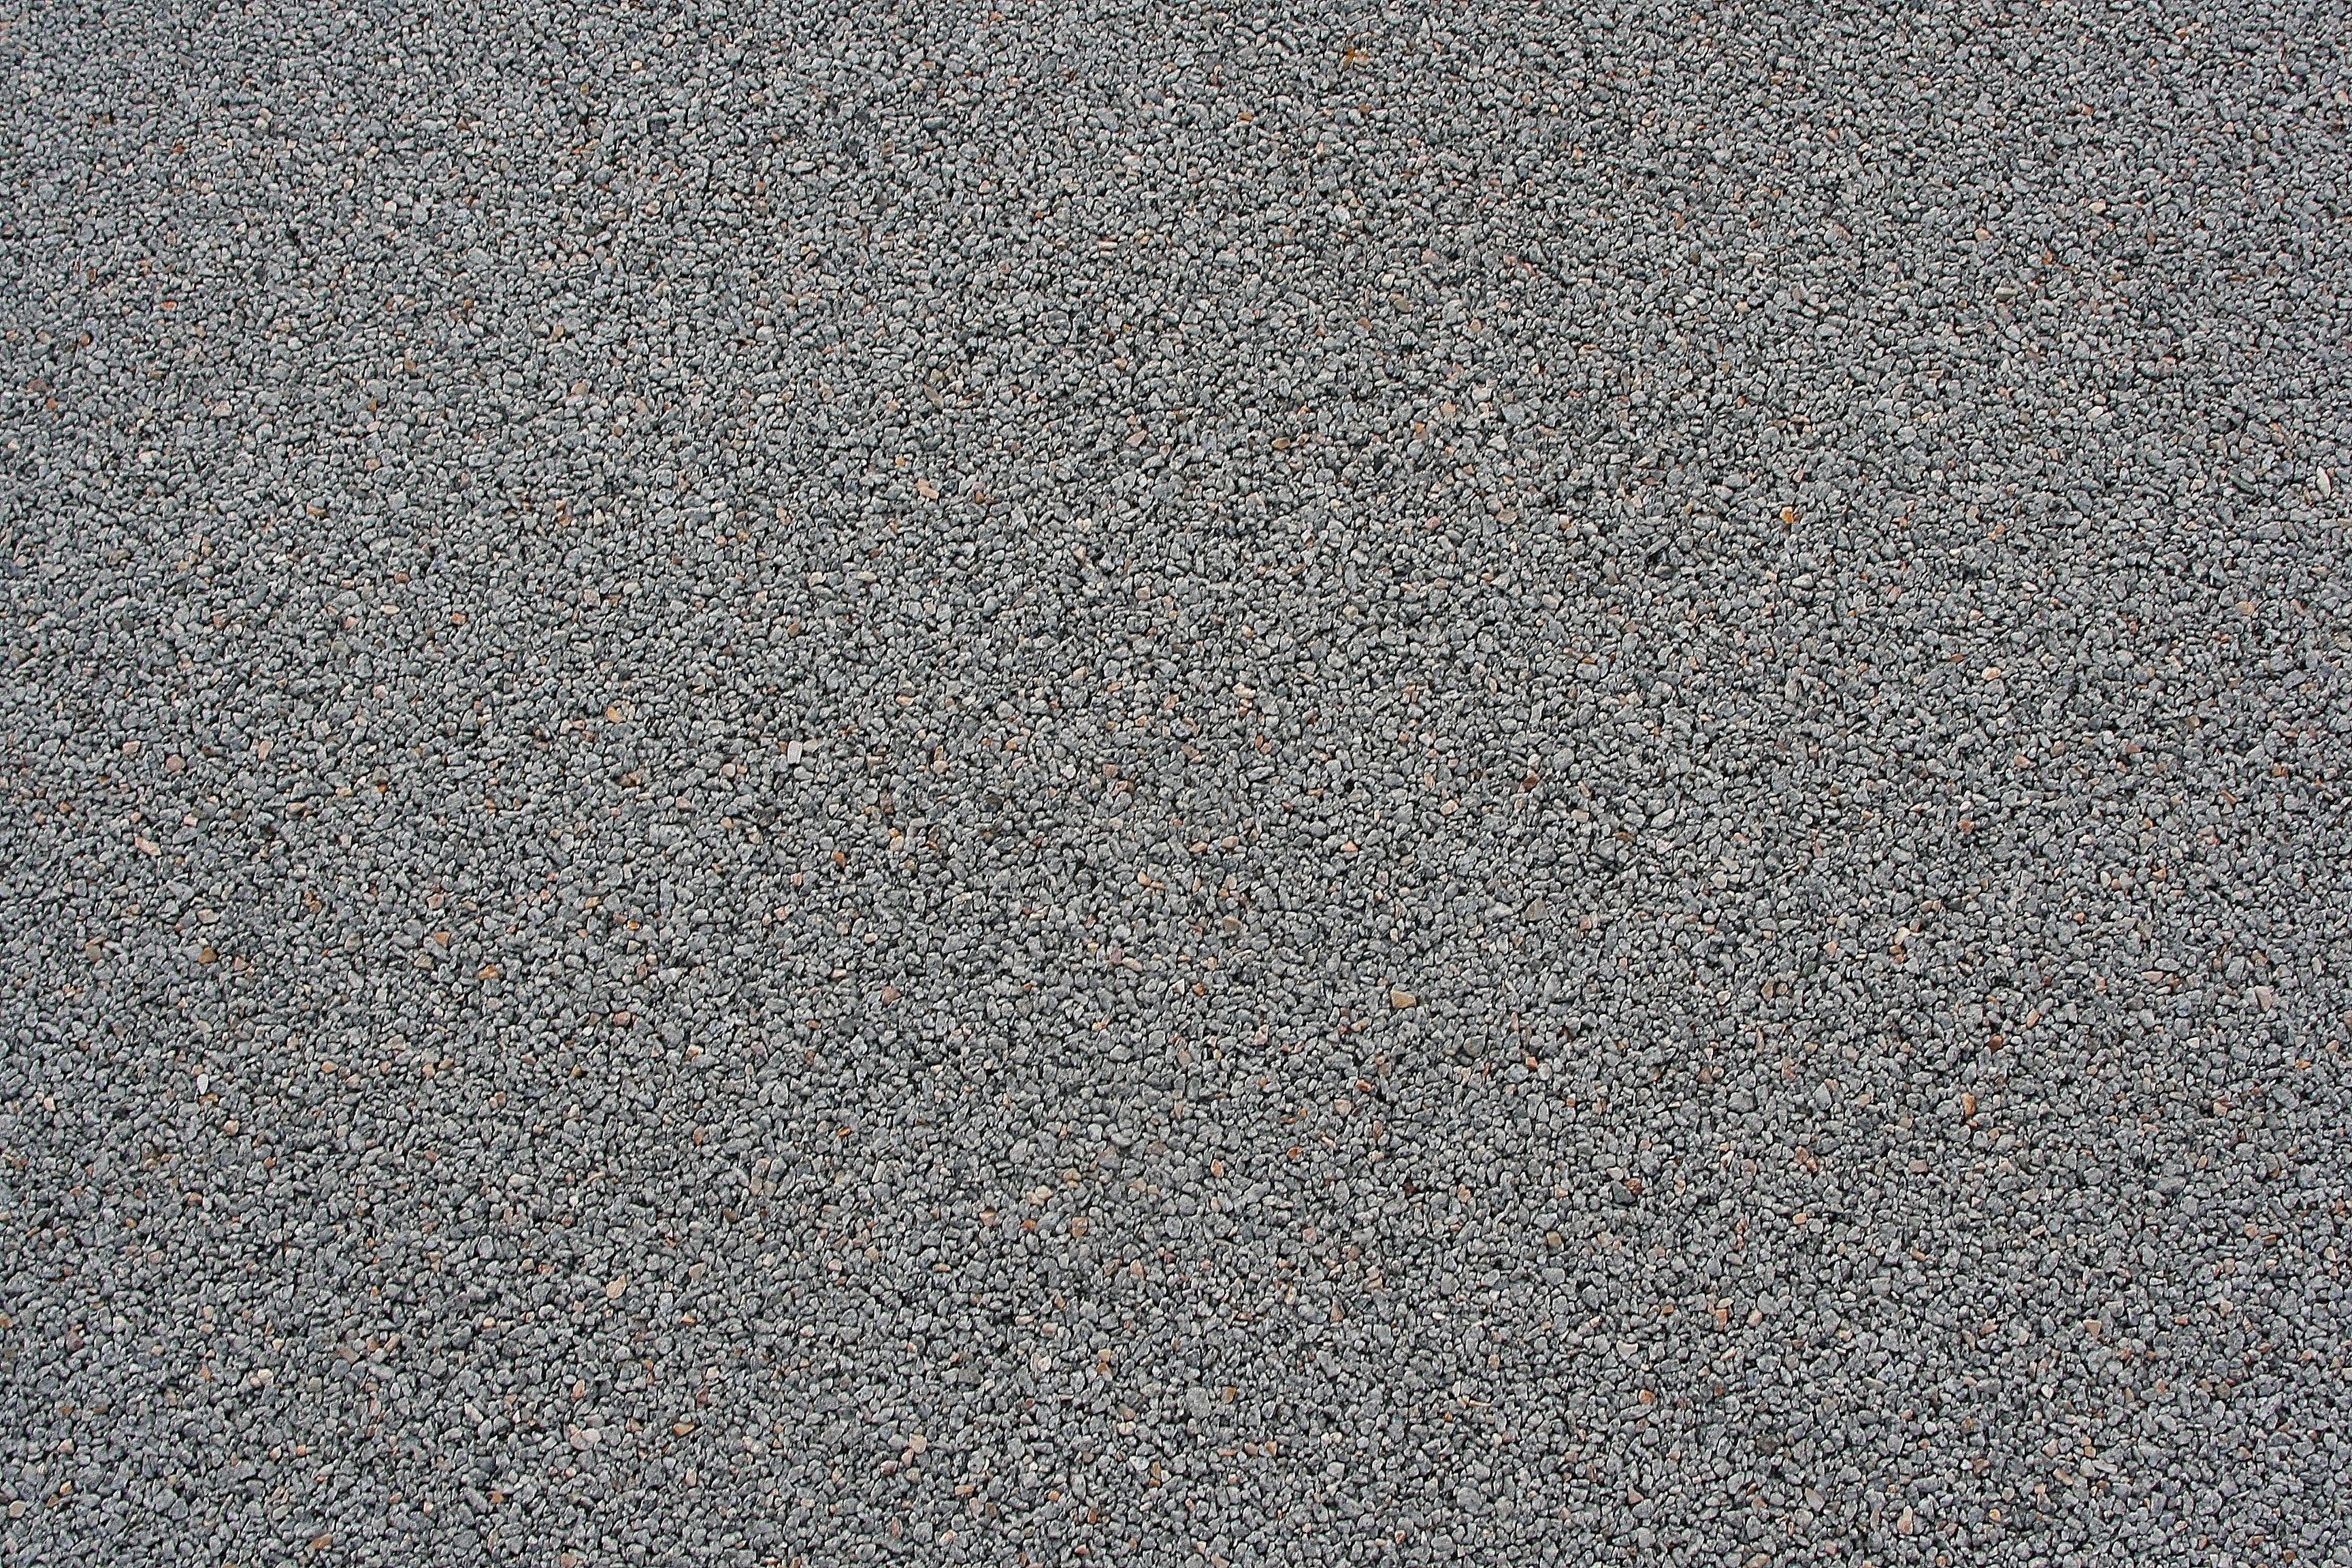 gray pavement